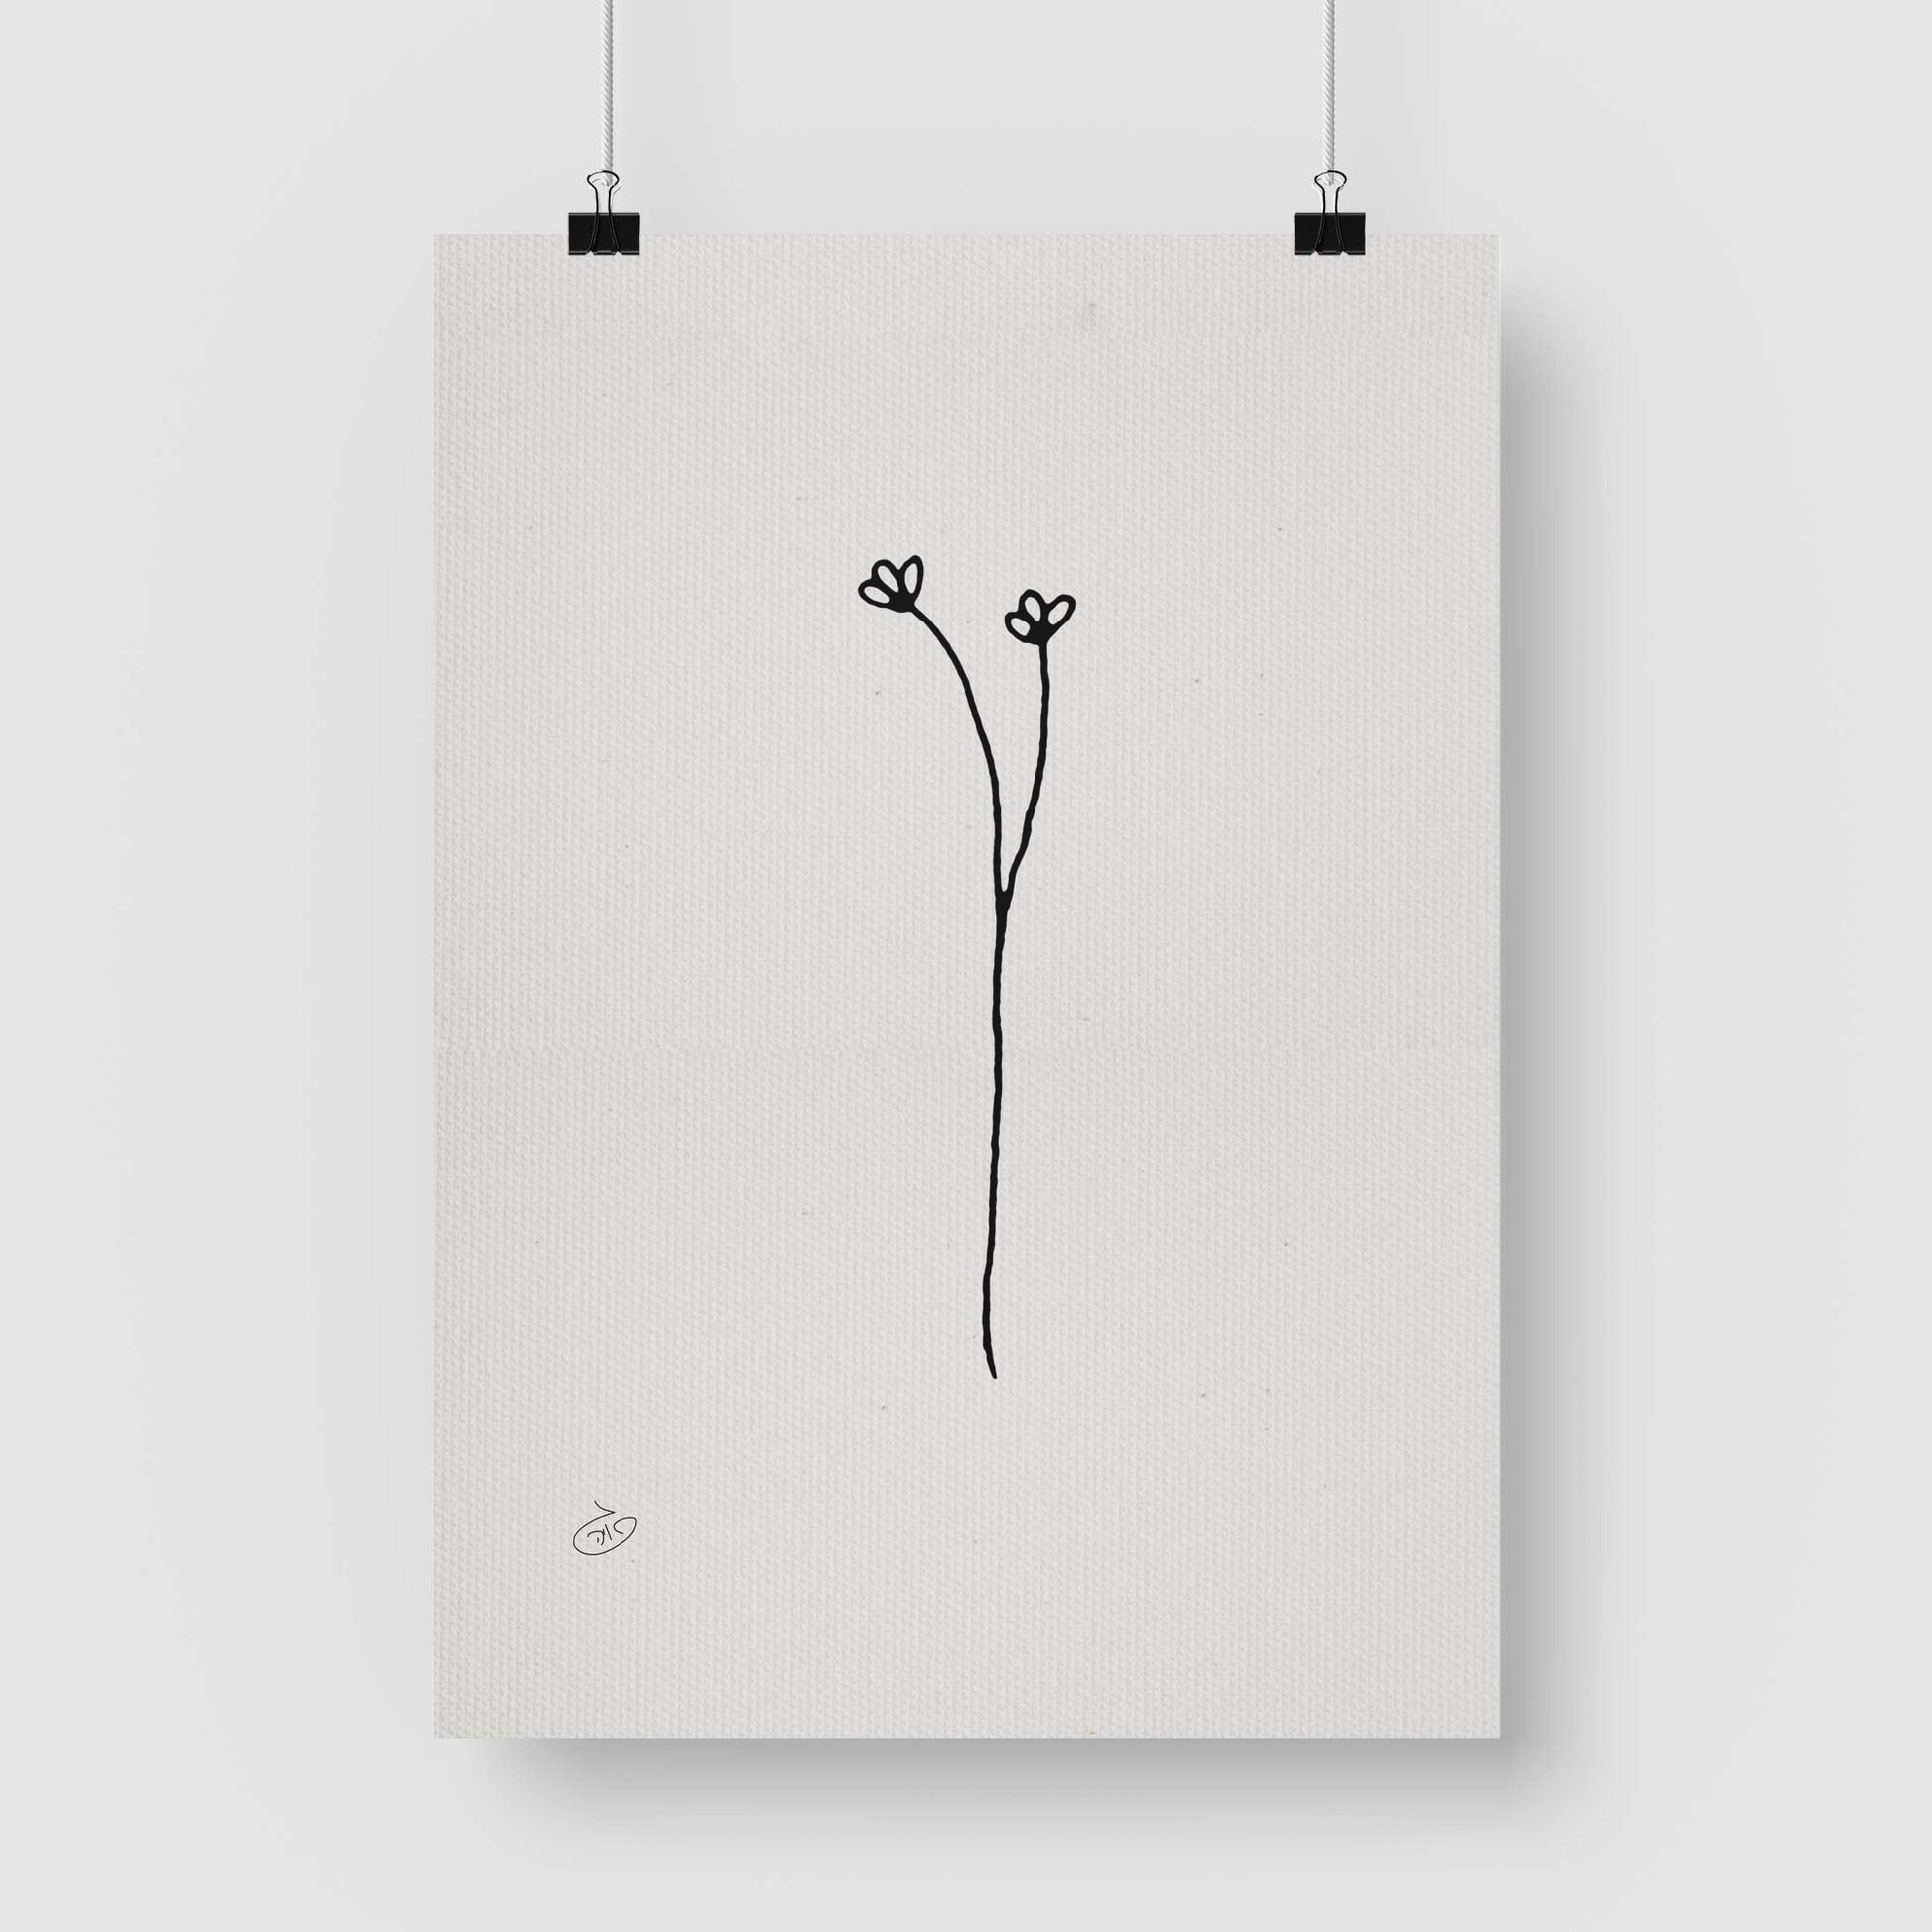 פוסטר One Line Flower - Olivia Poster ציור מקורי של גאיה המקדם את המודעות לאלימות בין בני זוג בכלל וכלפי נשים בפרט